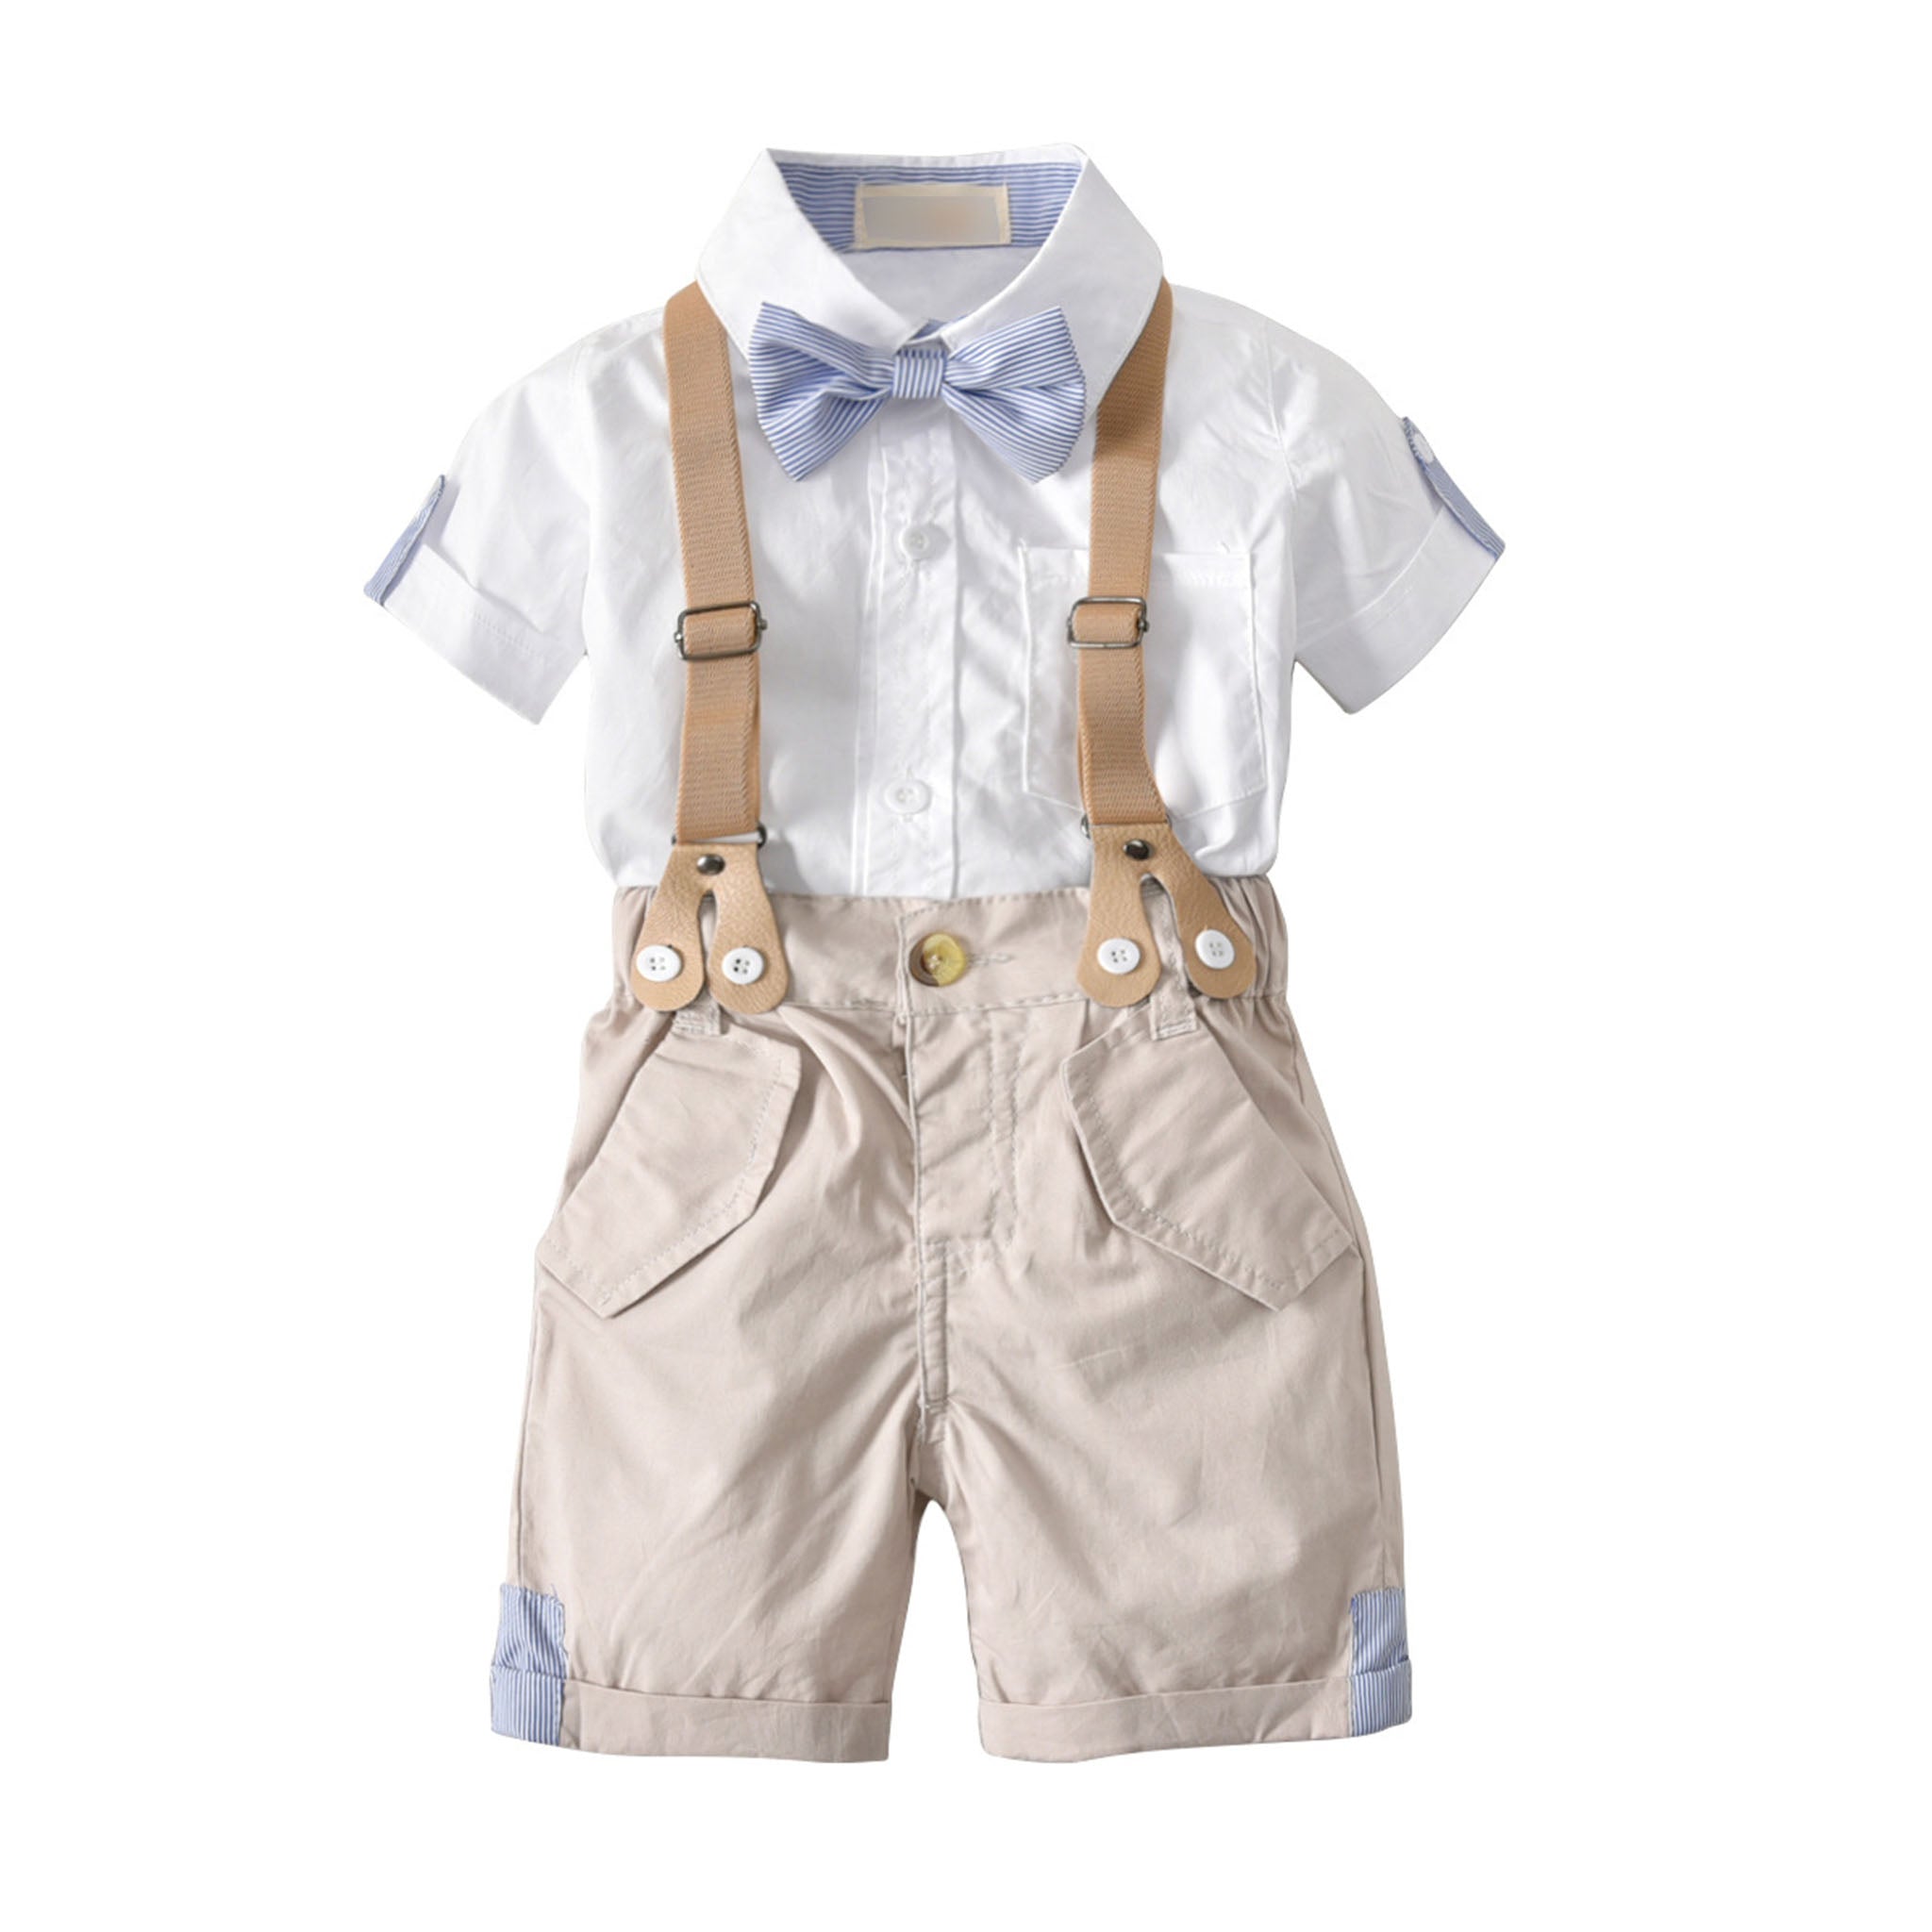 Toddler Boy Bow Tie Gentleman Suspender Shorts Short Sleeve Shirt Four-piece Children's Suit